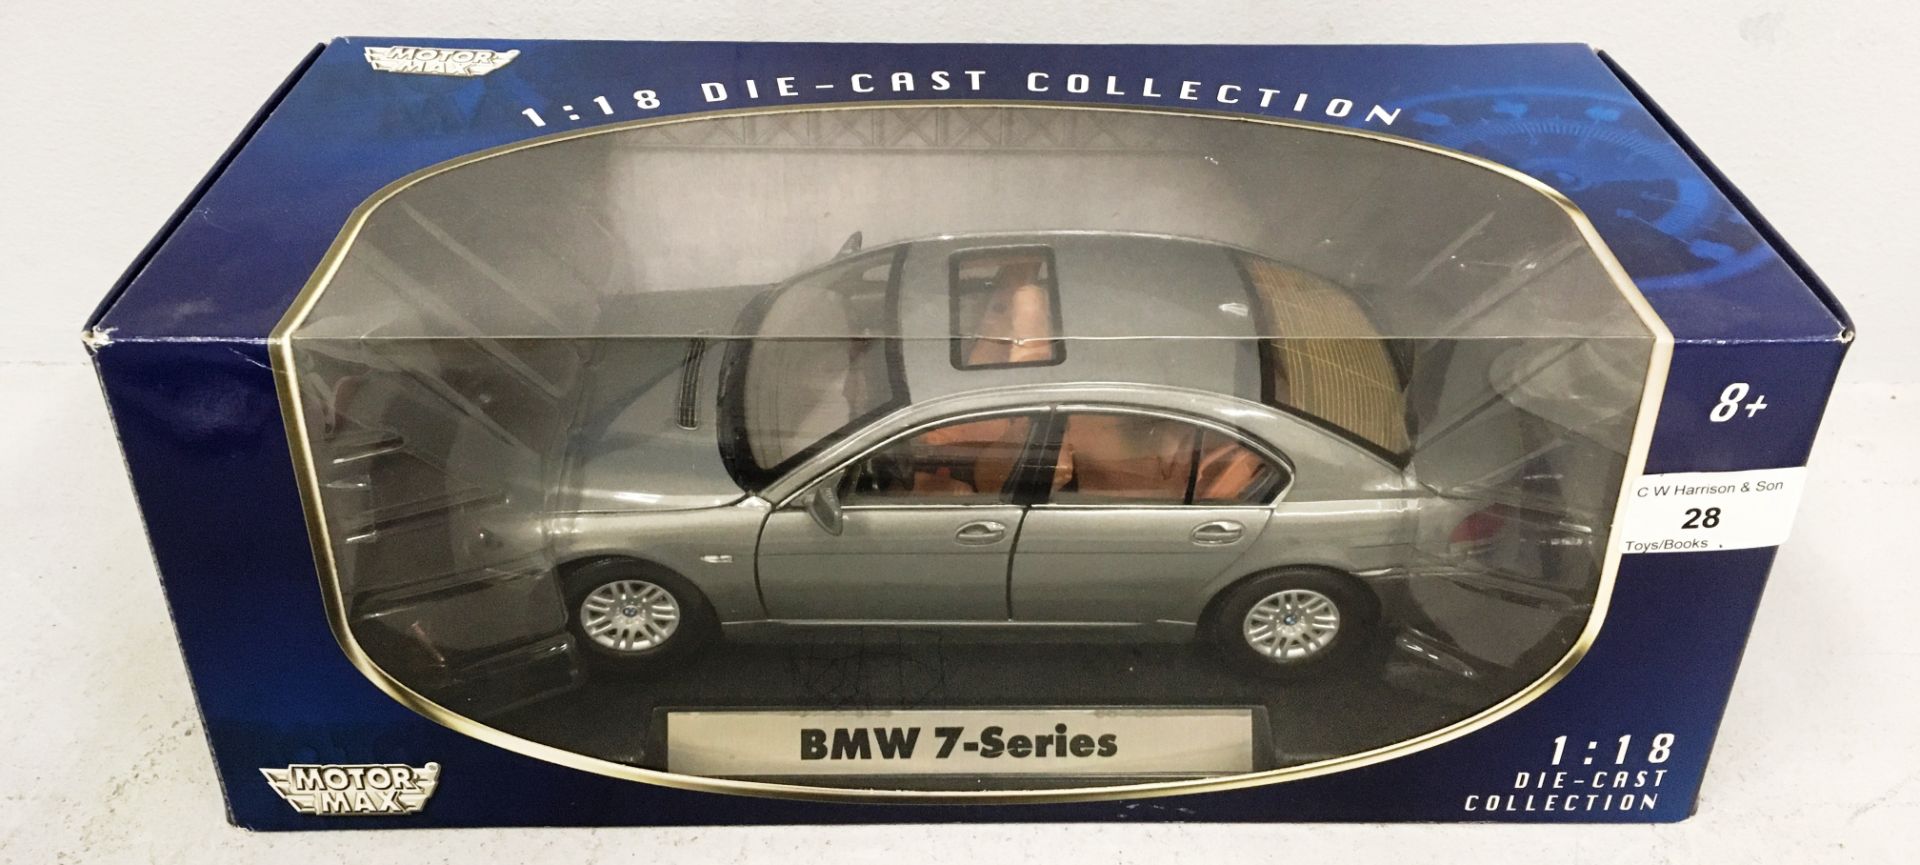 Motor Max 1/18 scale die cast metal model of BMW 7 Series in grey (boxed)